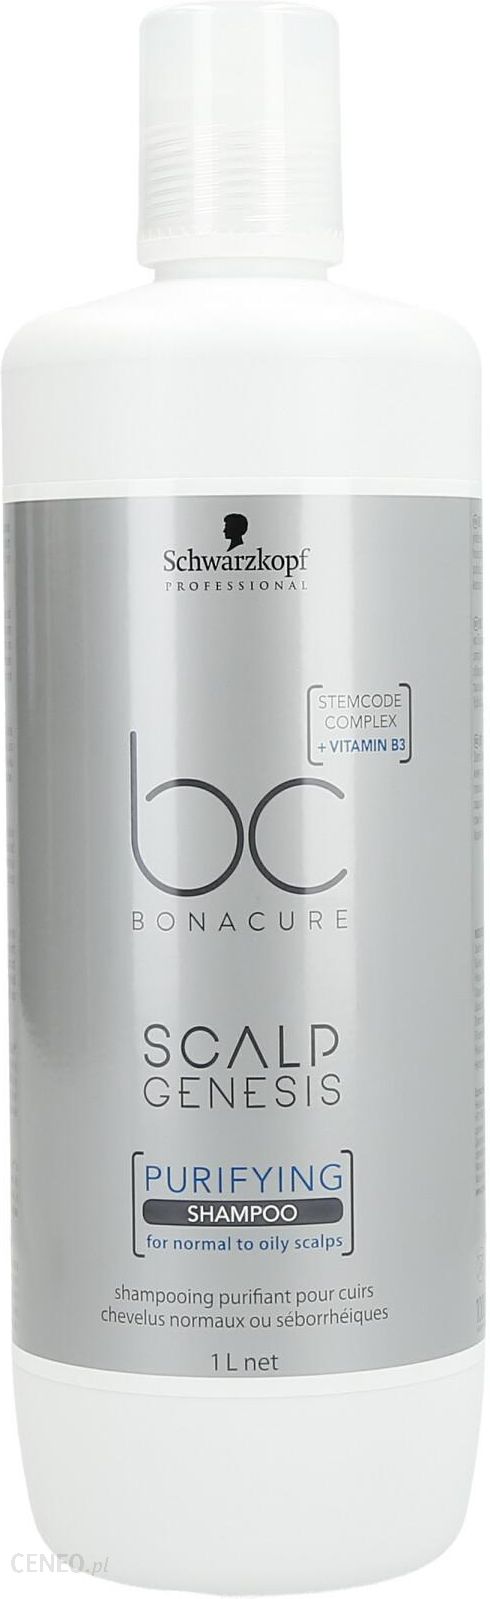 schwarzkopf bc scalp therapy szampon głęboko oczyszczający wizaz